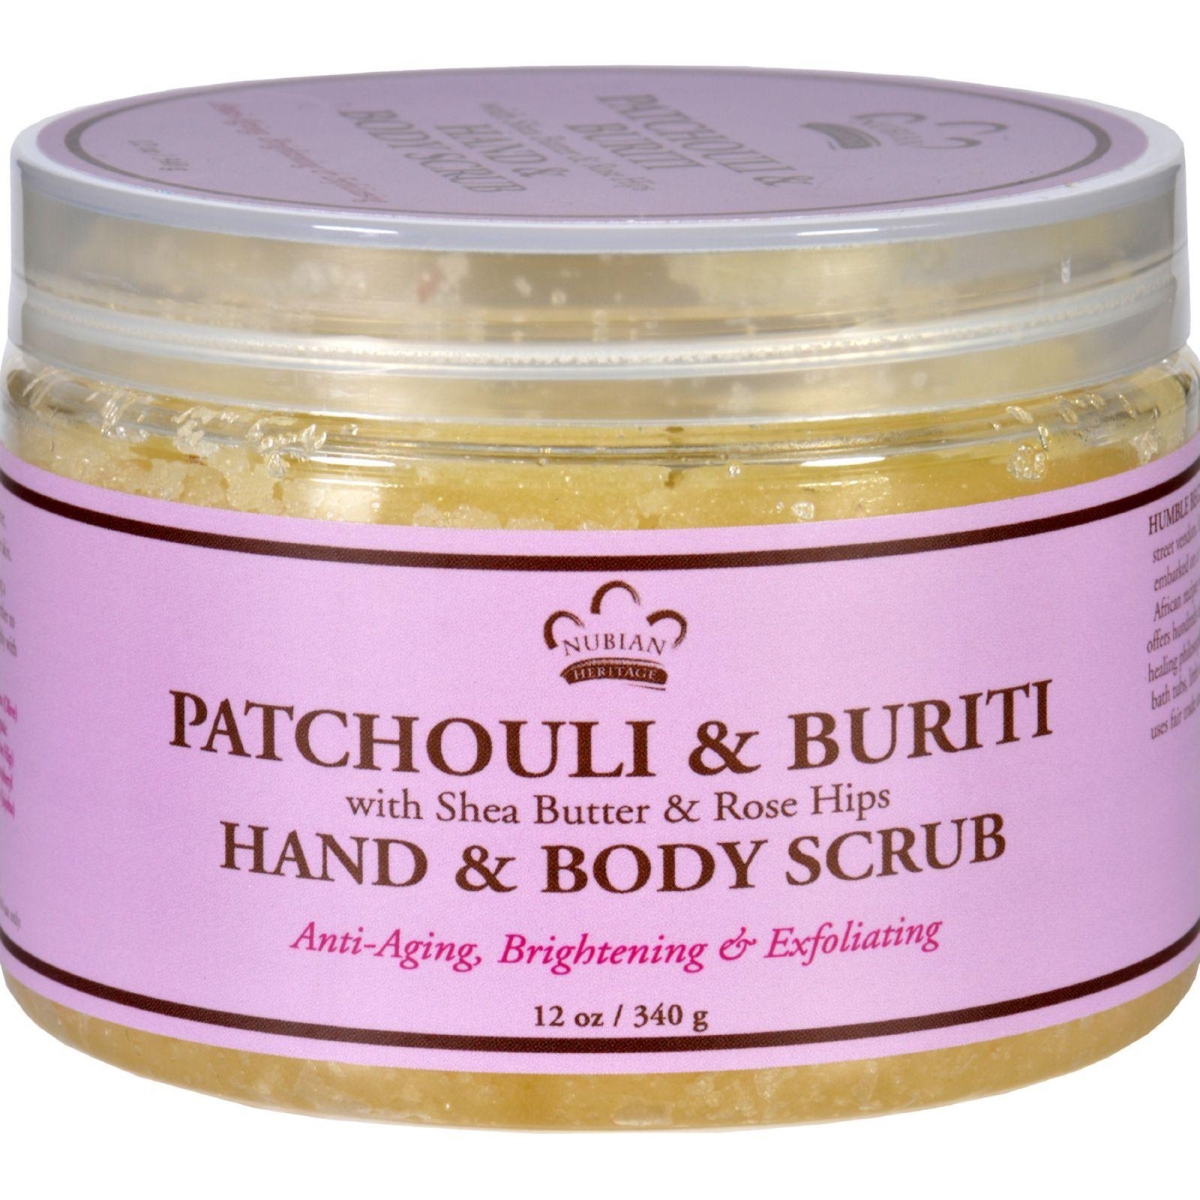 Hg1703222 12 Oz Hand & Body Scrub - Patchouli & Buriti